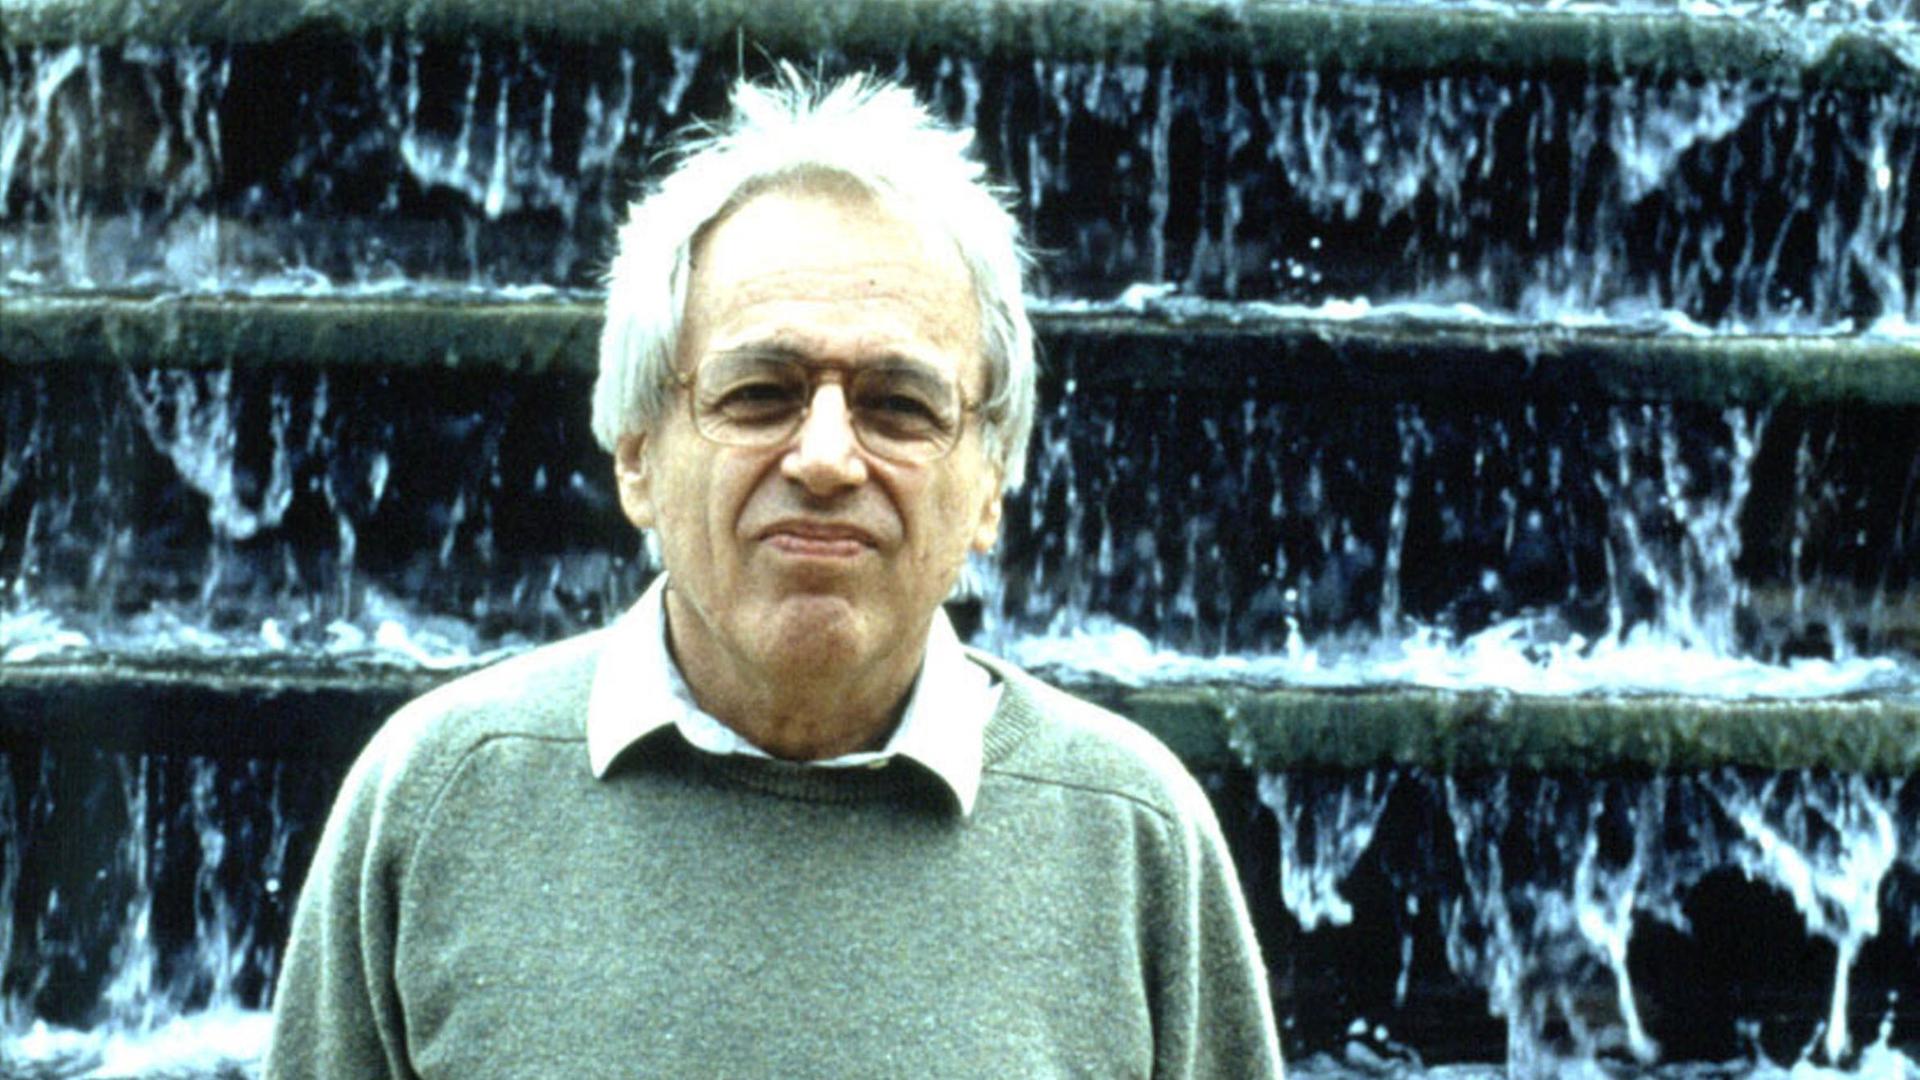 György Ligeti steht mit einem grünlichen Pullover und weißem Haar vor einer Wasserkunst, die wie ein großer Wasserfall aussieht. 